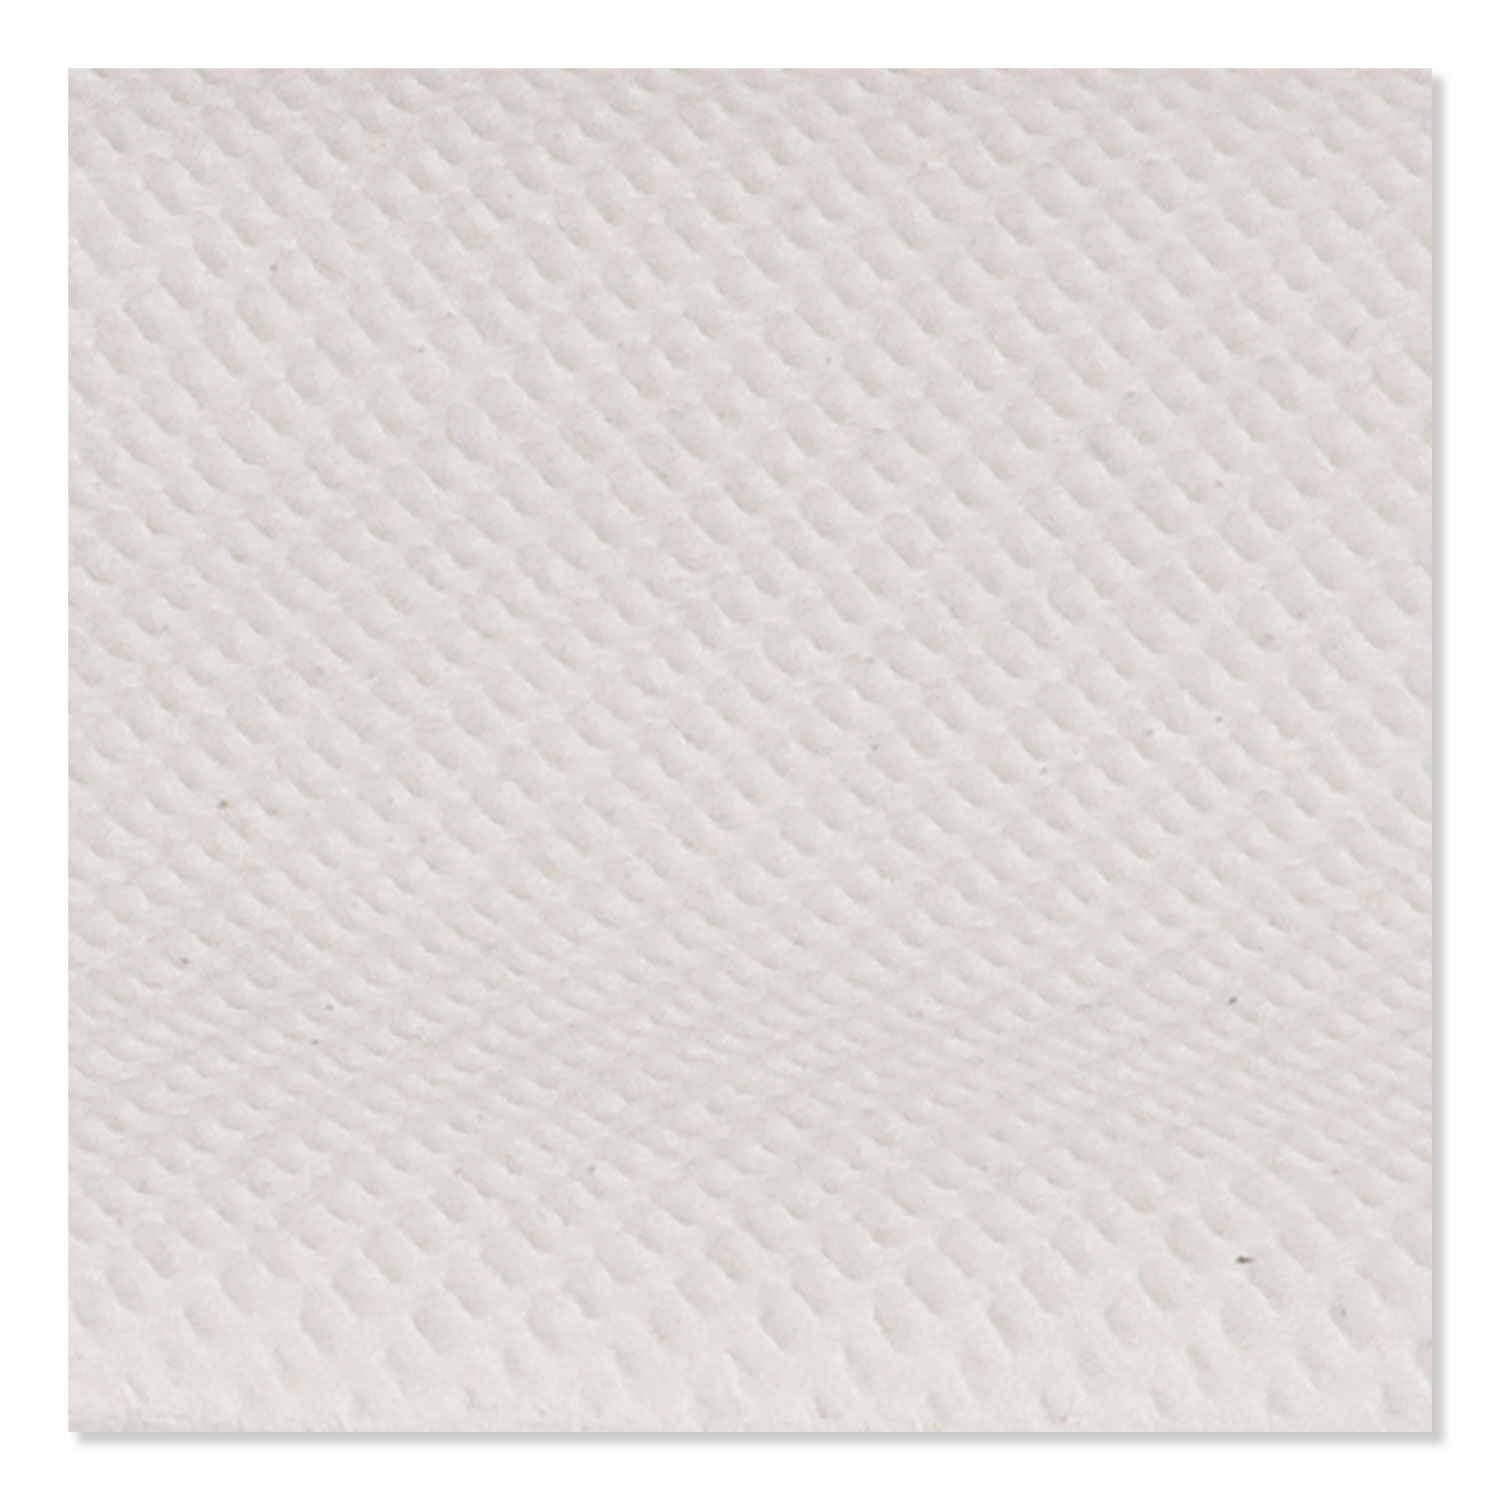 Multipurpose Paper Wiper, 9 x 10.25, White, 110/Box, 18 Boxes/Carton